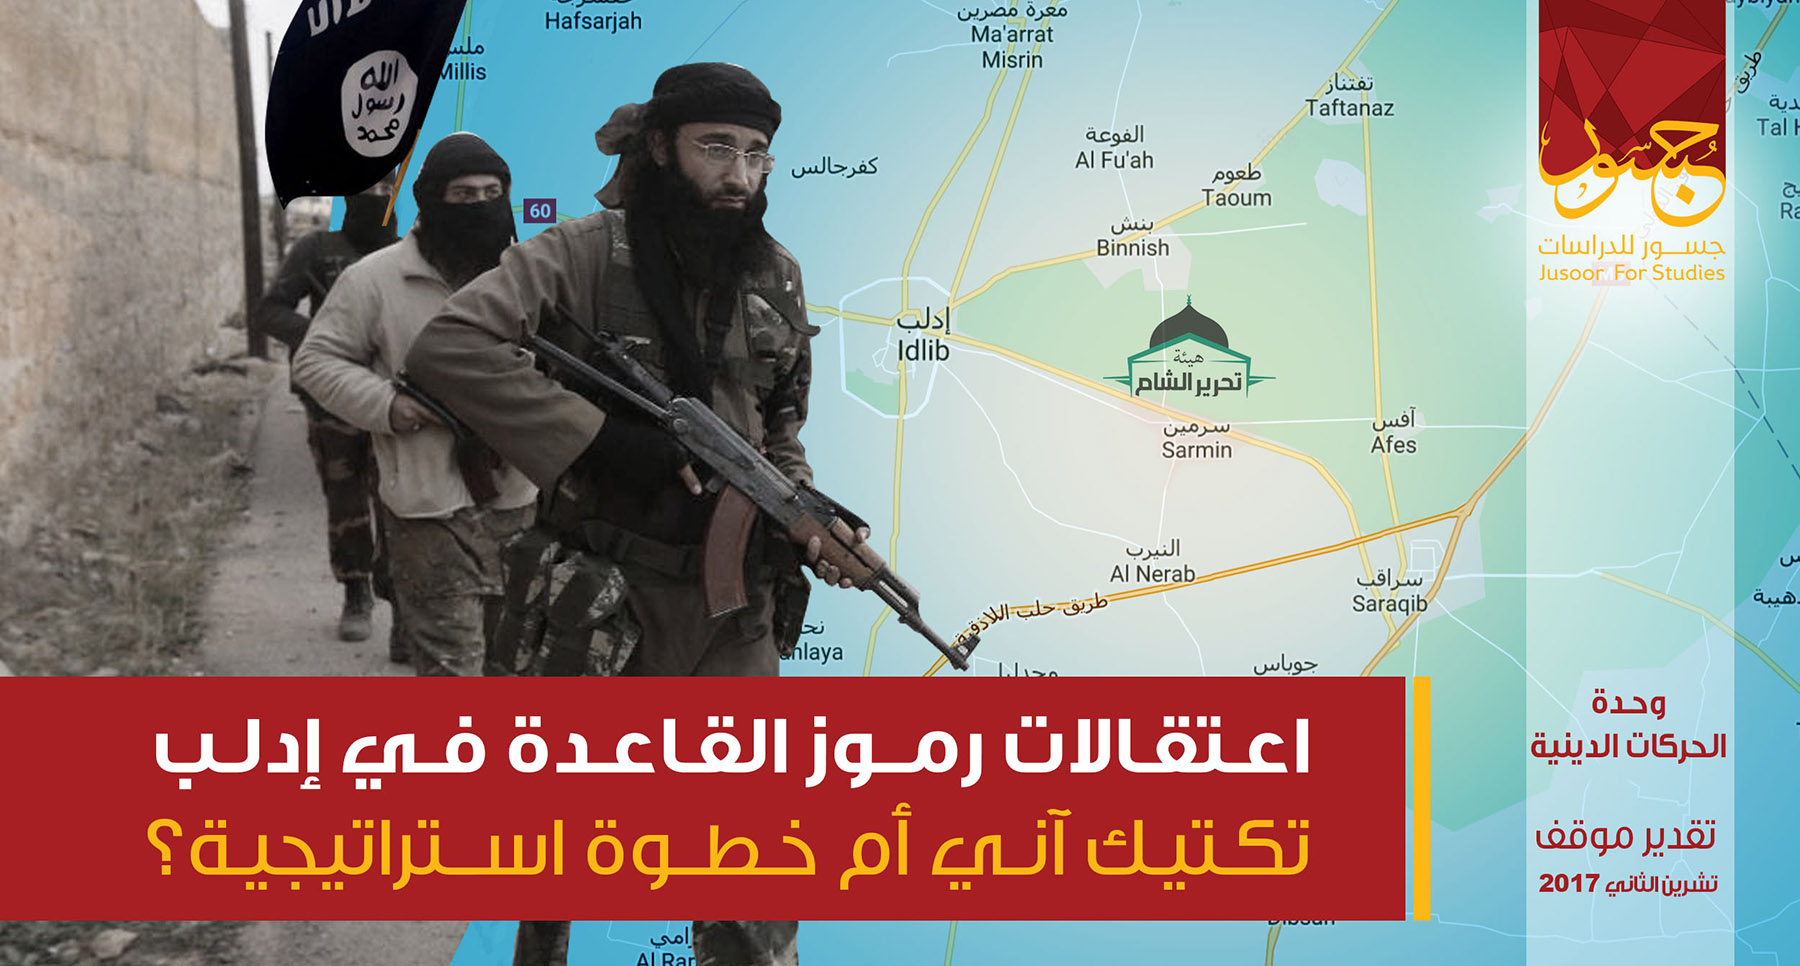 اعتقالات رموز القاعدة في إدلب...تكتيك آني أم خطوة استراتيجية؟